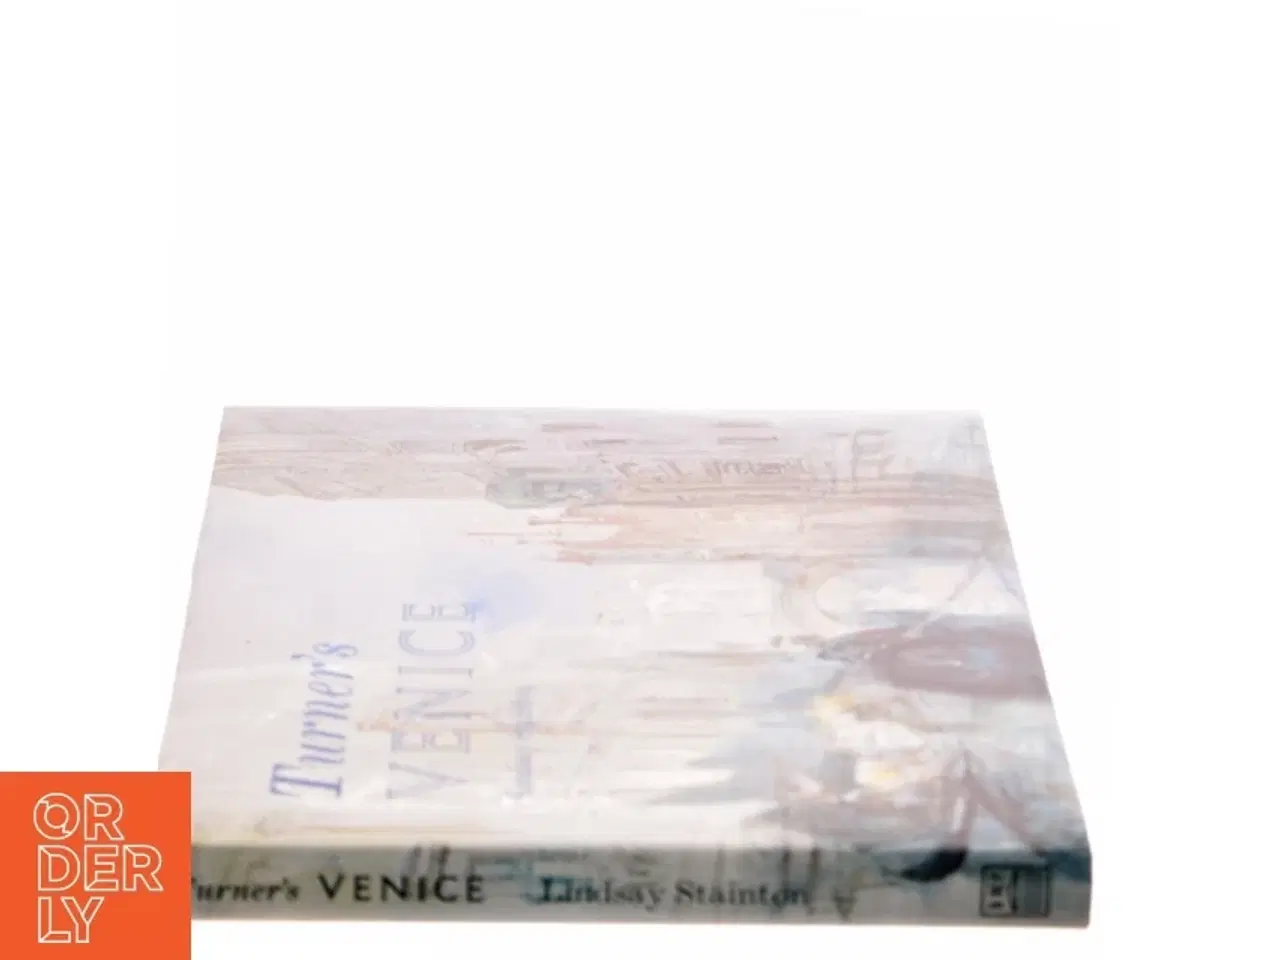 Billede 2 - Turner's Venice af Lindsay Stainton, Joseph Mallord William Turner (Bog)